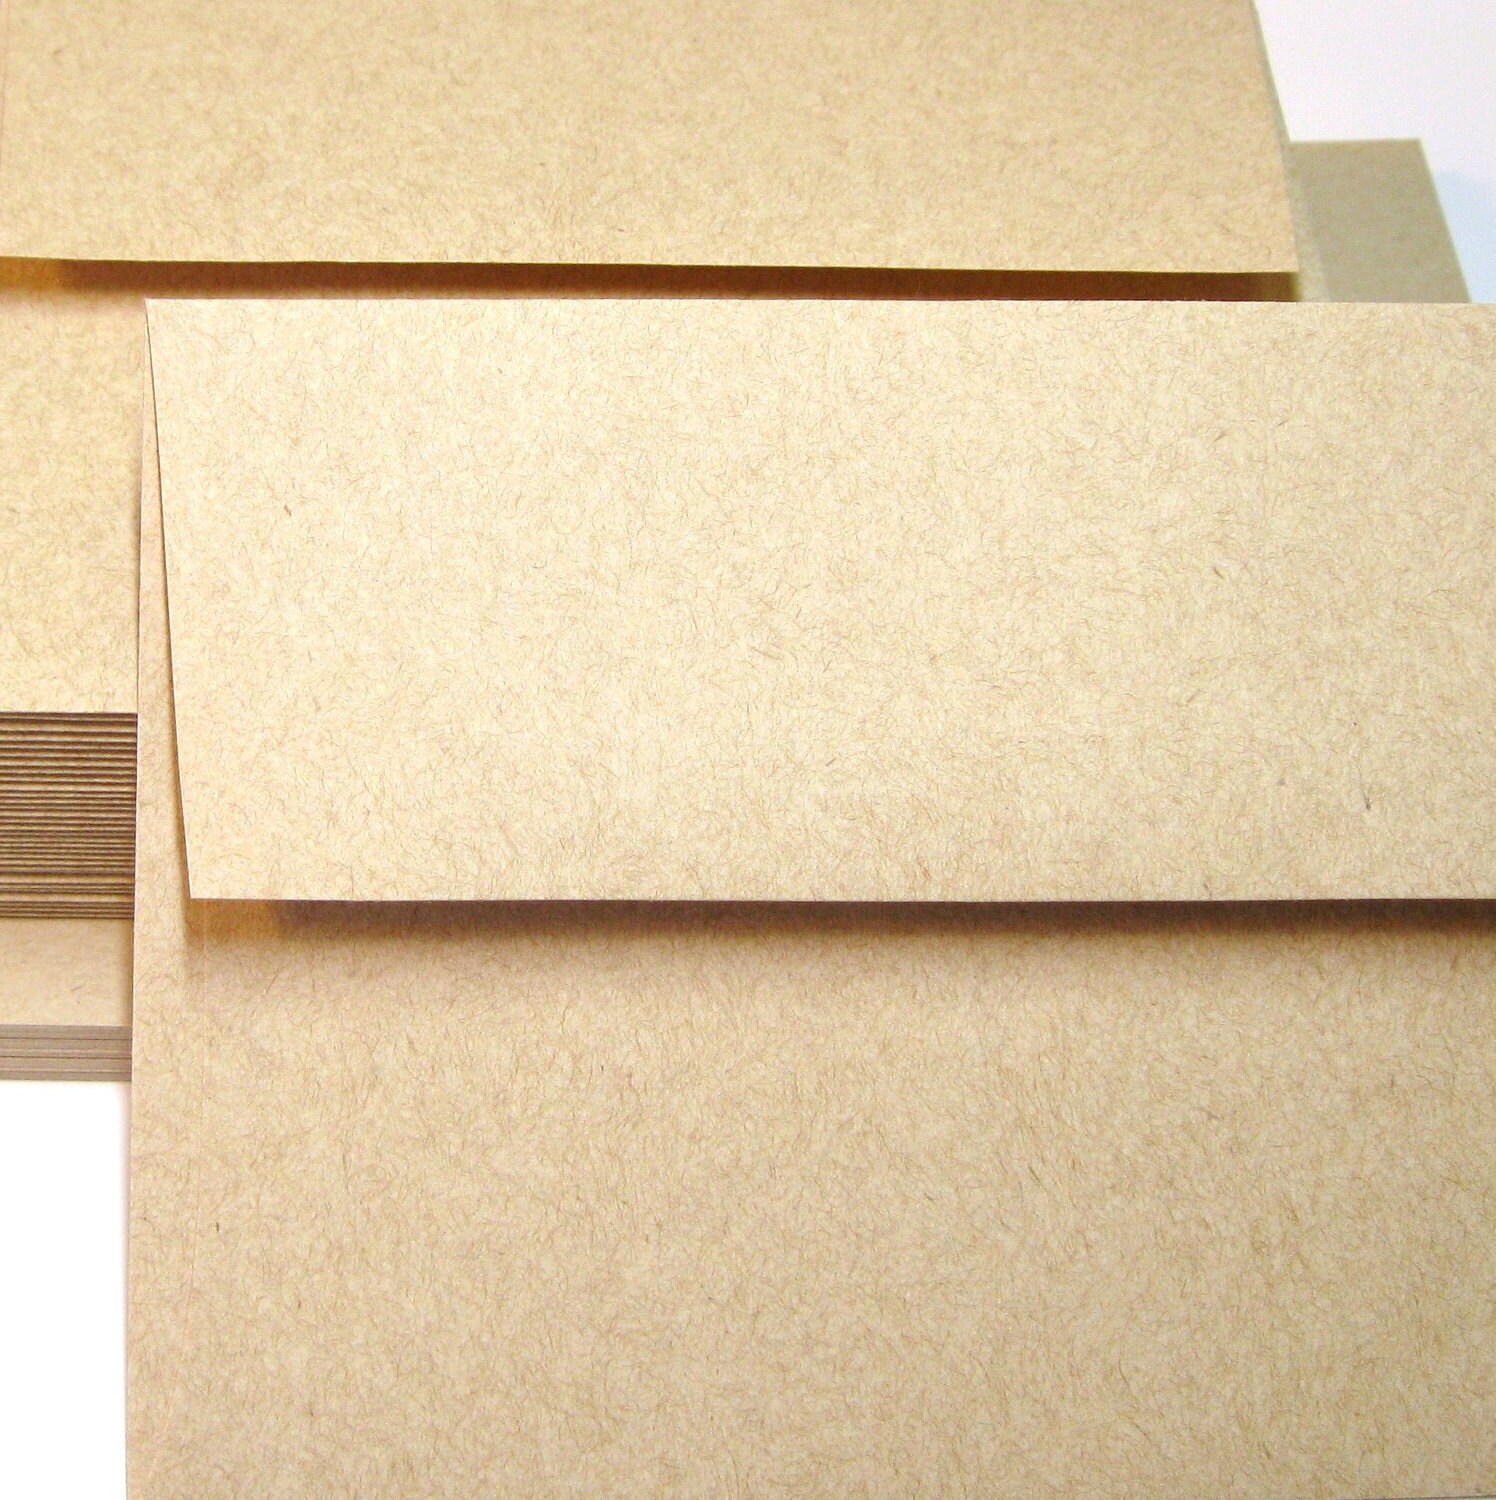 a2 envelope size